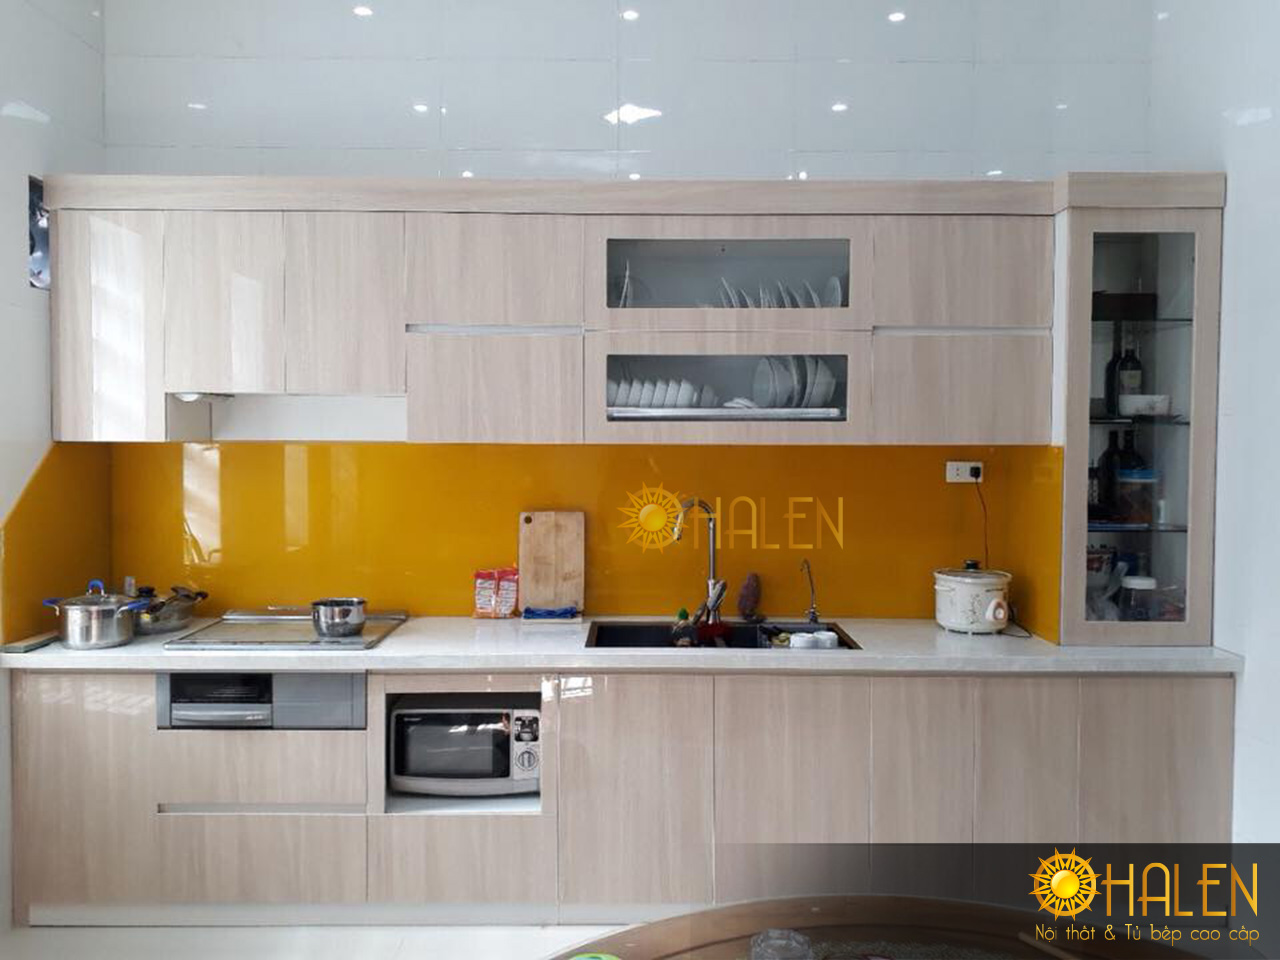 Bộ tủ bếp gỗ Acrylic màu vân gỗ nhẹ nhàng kính bếp màu vàng thêm nổi bật